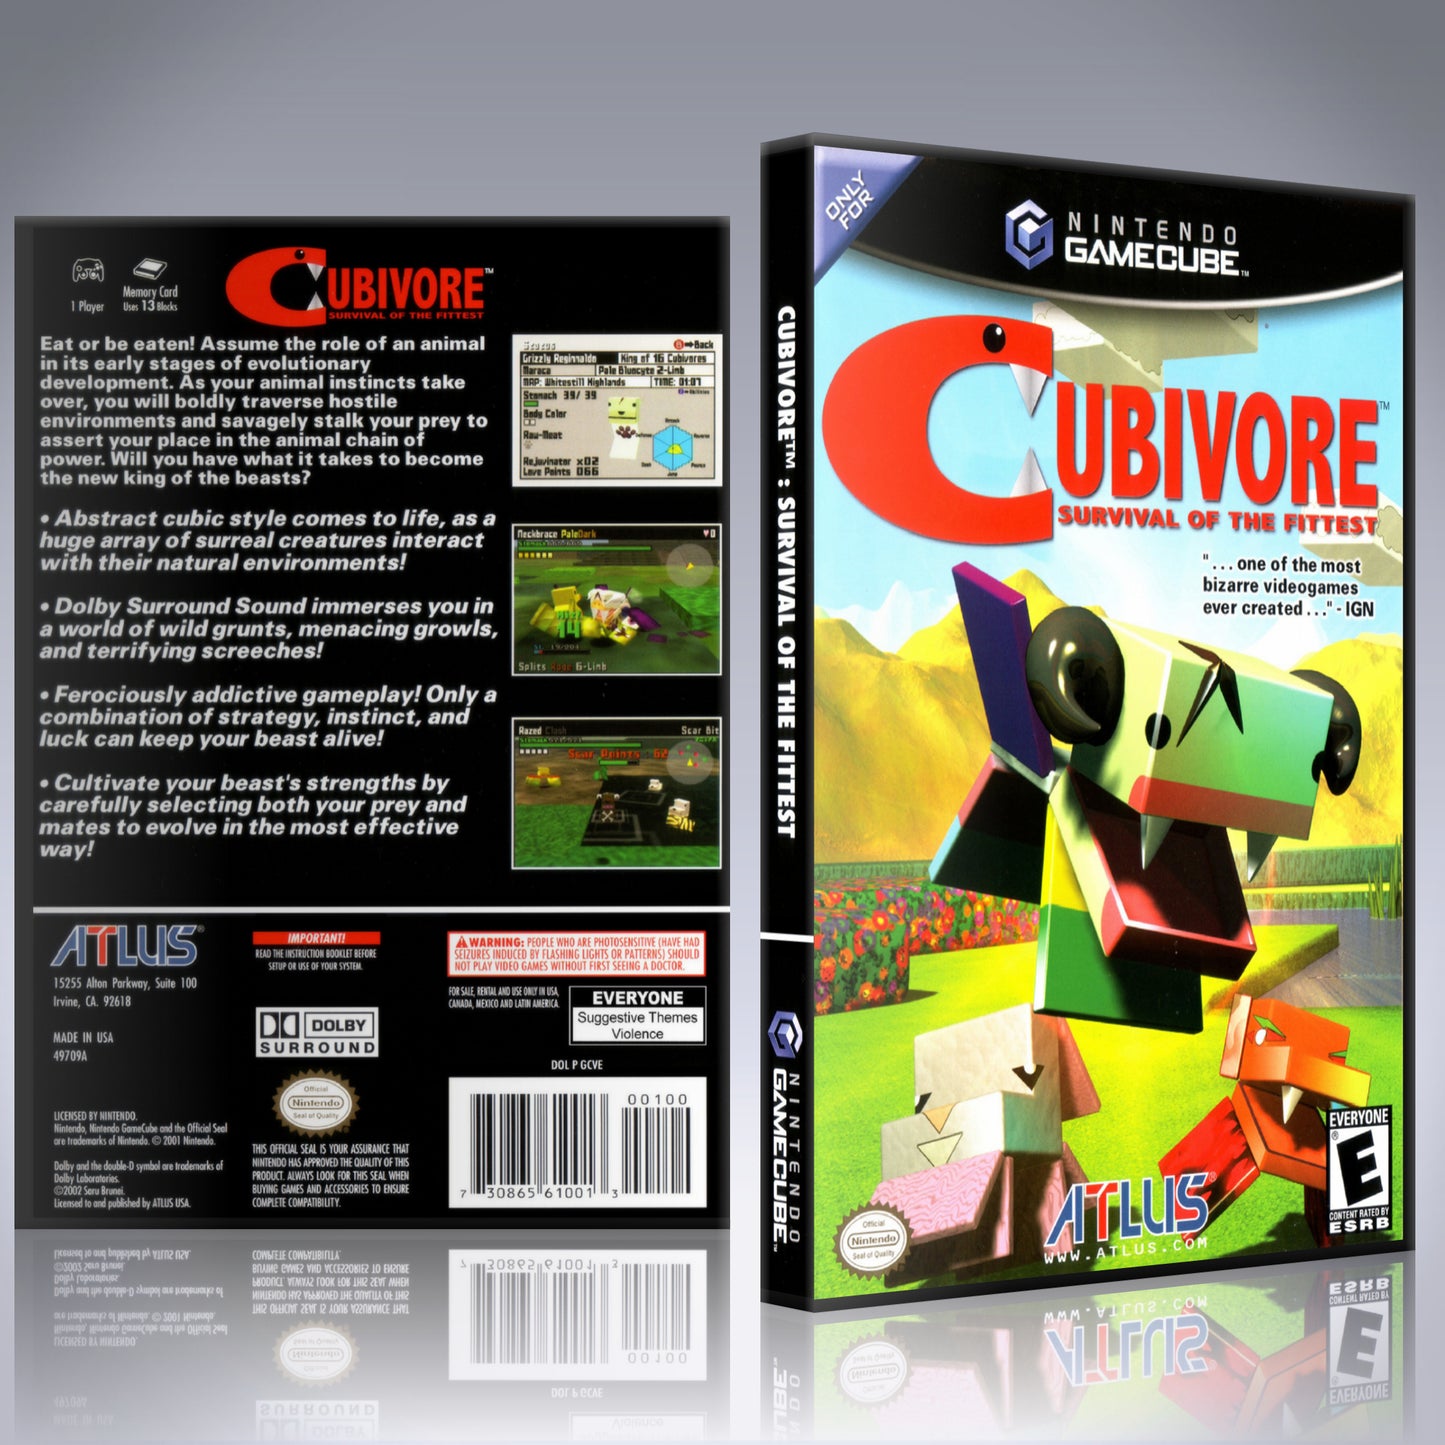 GameCube Replacement Case - NO GAME - Cubivore